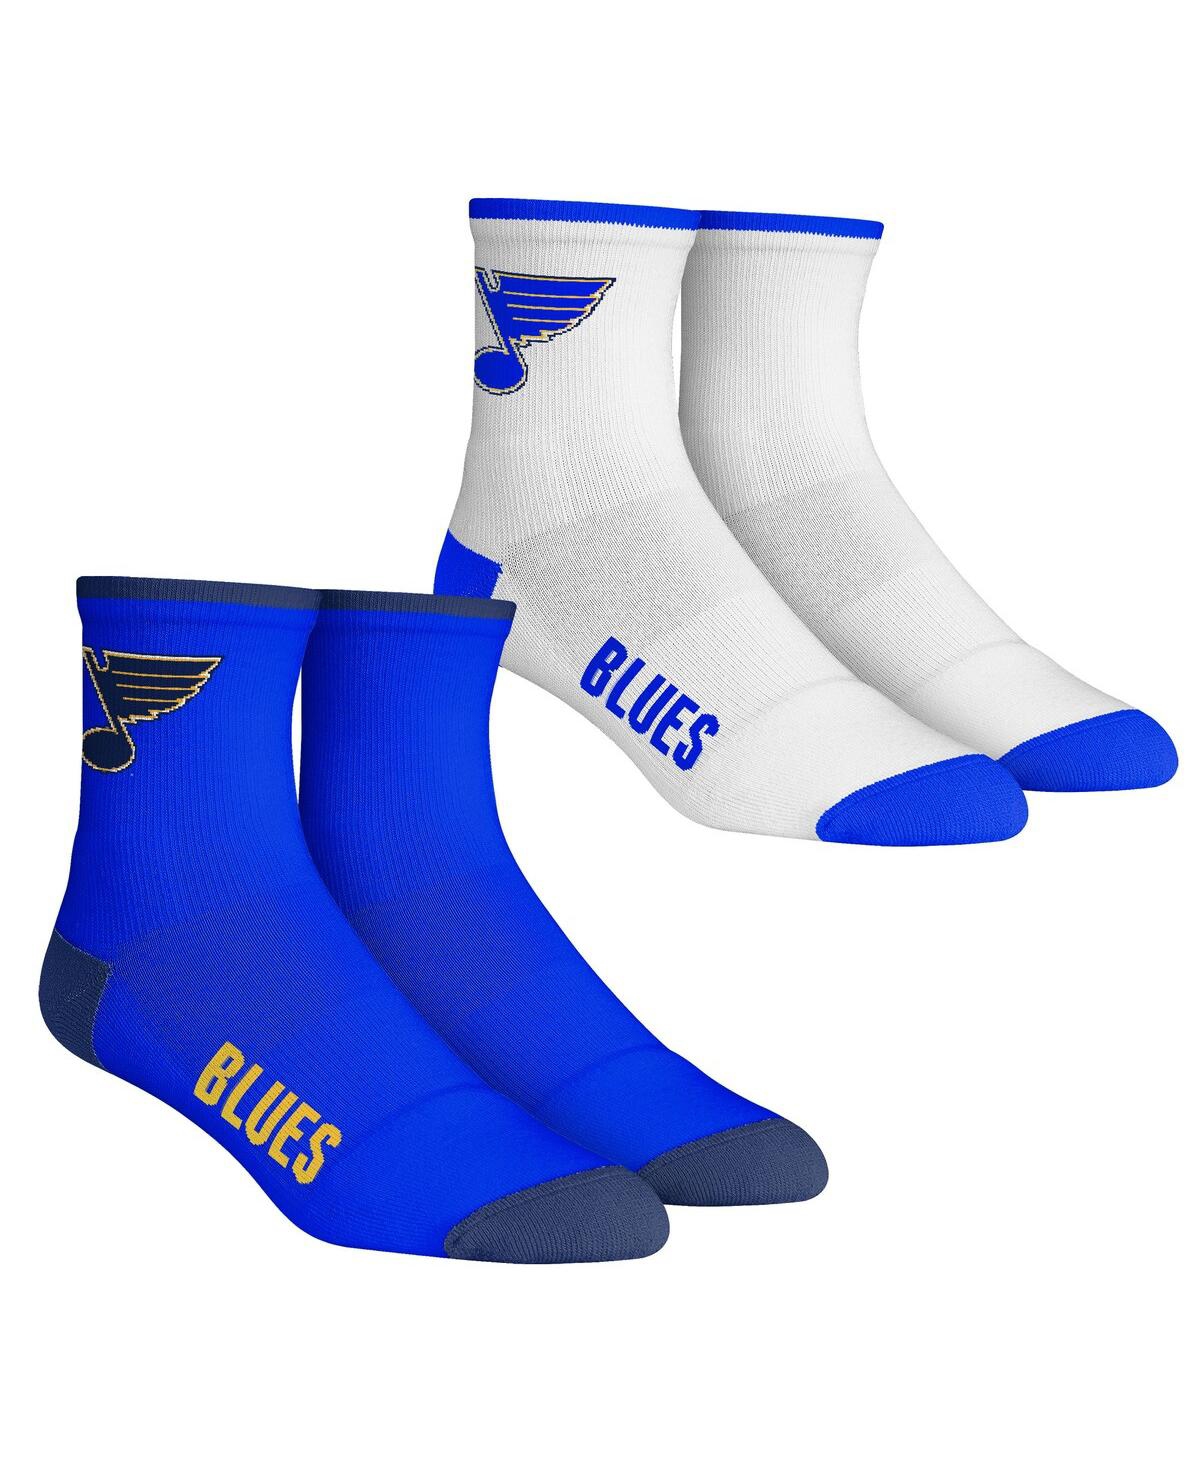 Rock 'em Men's  Socks St. Louis Blues Core Team 2-pack Quarter Length Sock Set In Blue,white